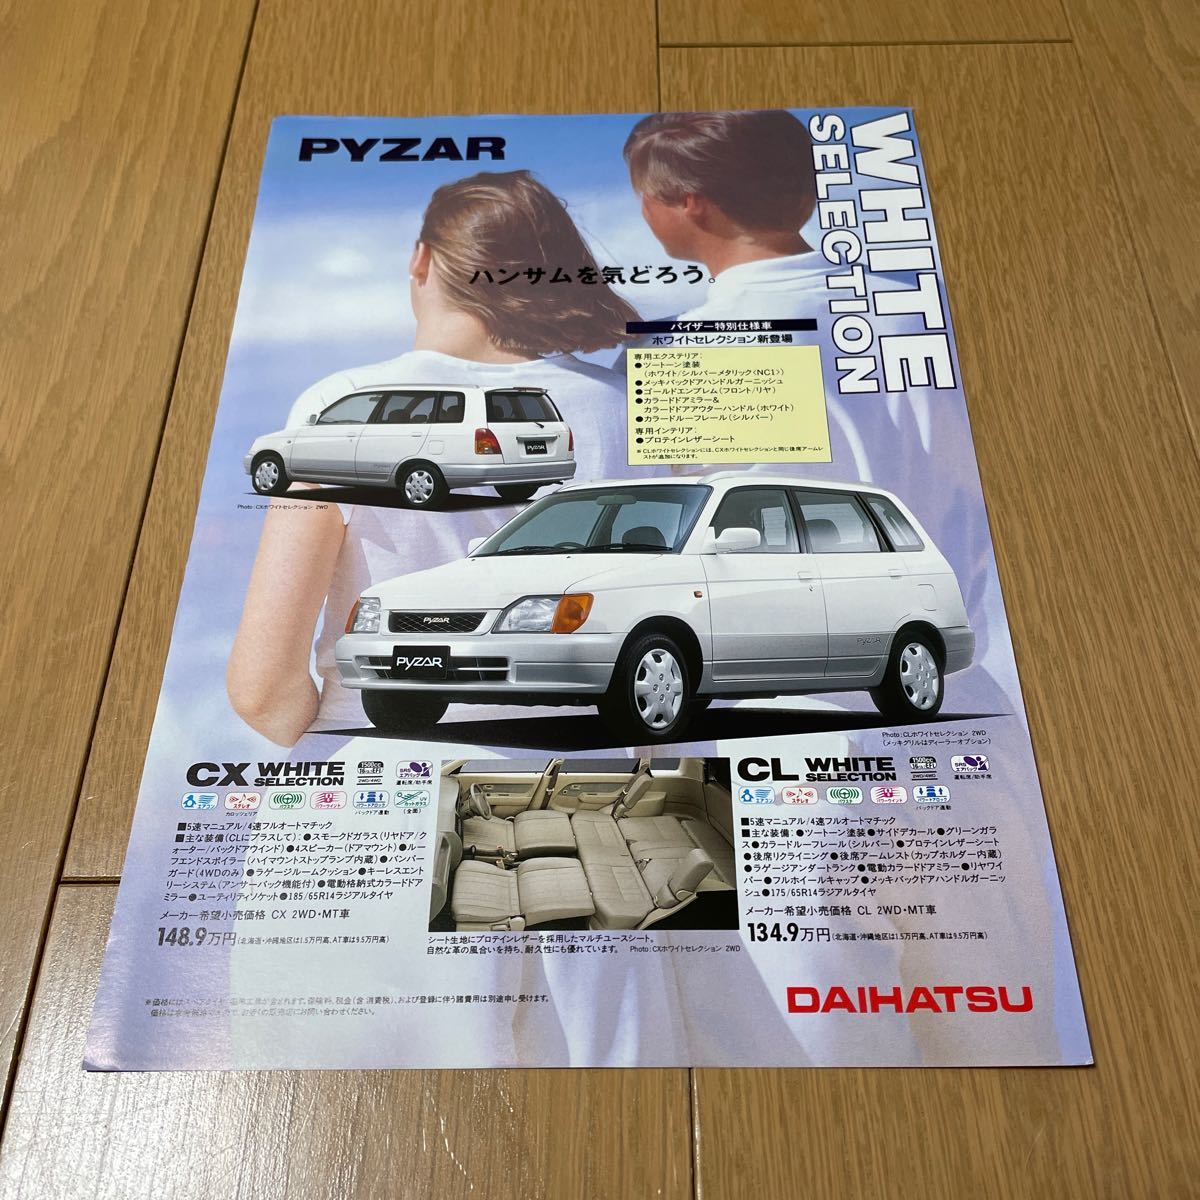 1996年10月発行 ダイハツパイザーカタログ 特別仕様車及びアクセサリーカタログ付きの画像9